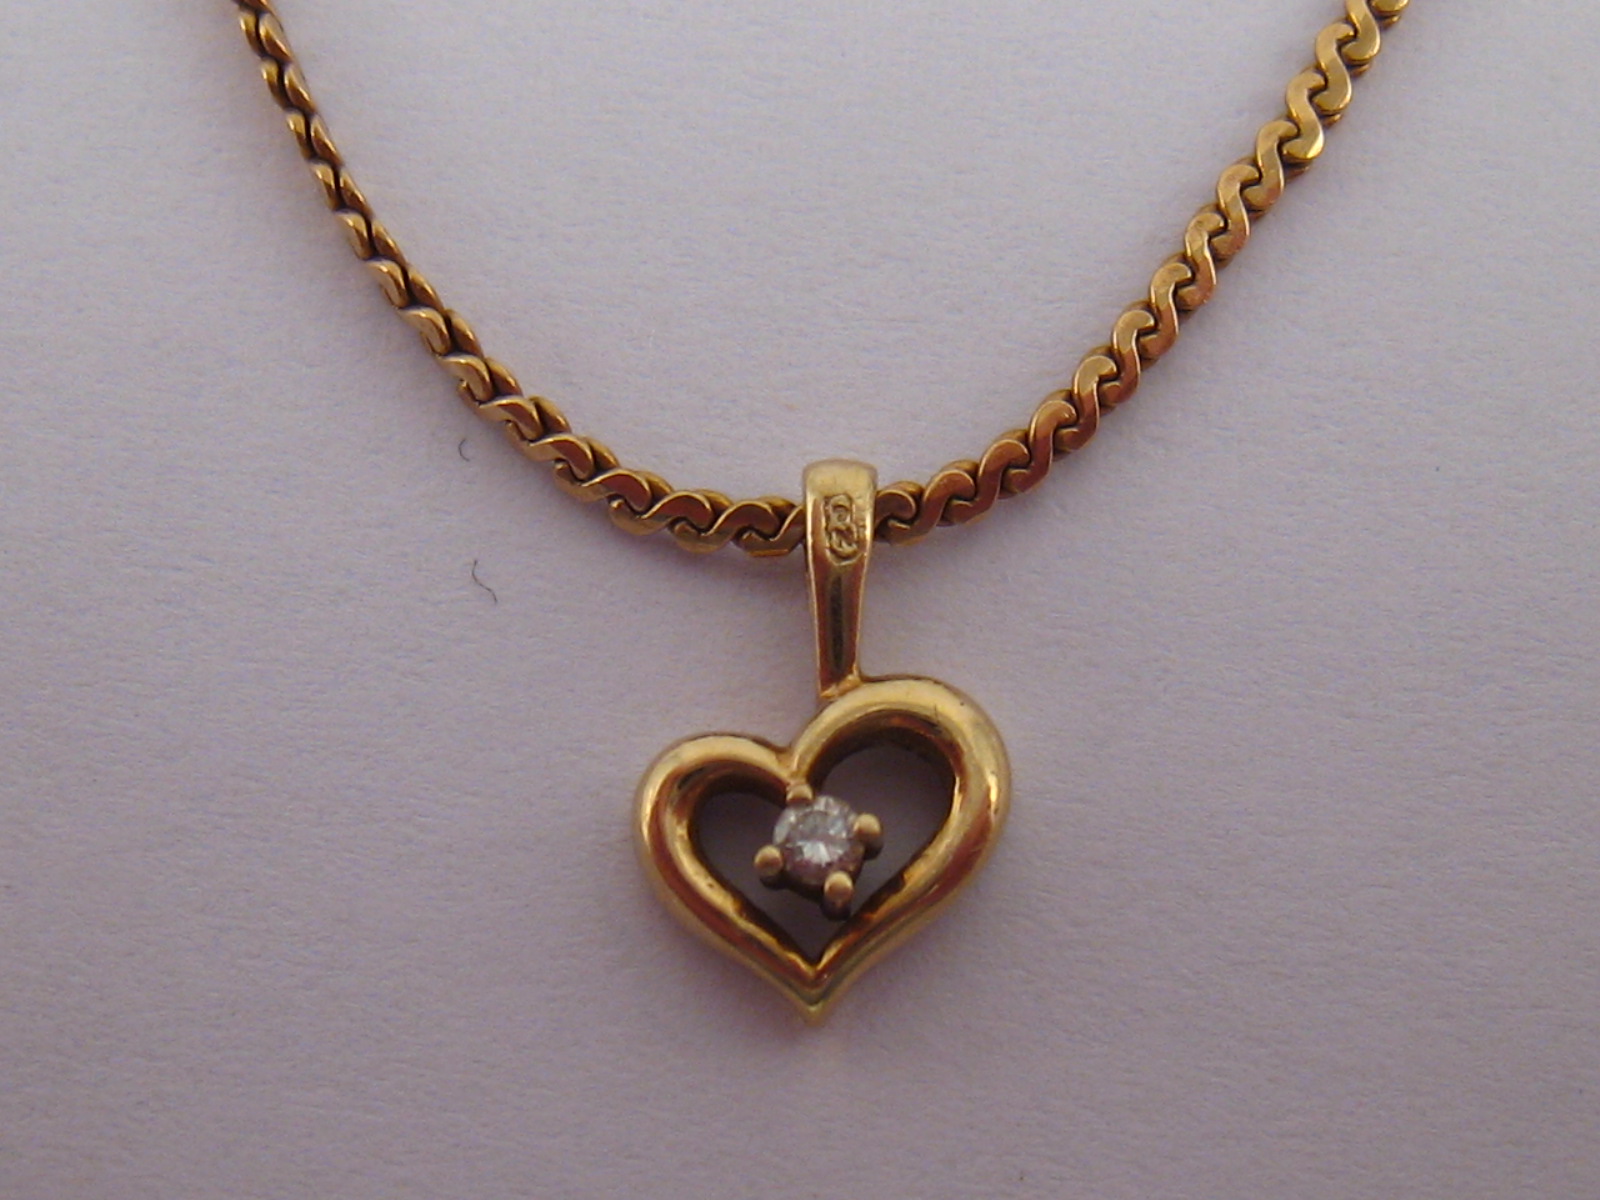 A 9 carat gold diamond set heart pendant necklace, approx 38cm long, 3.7 gms.